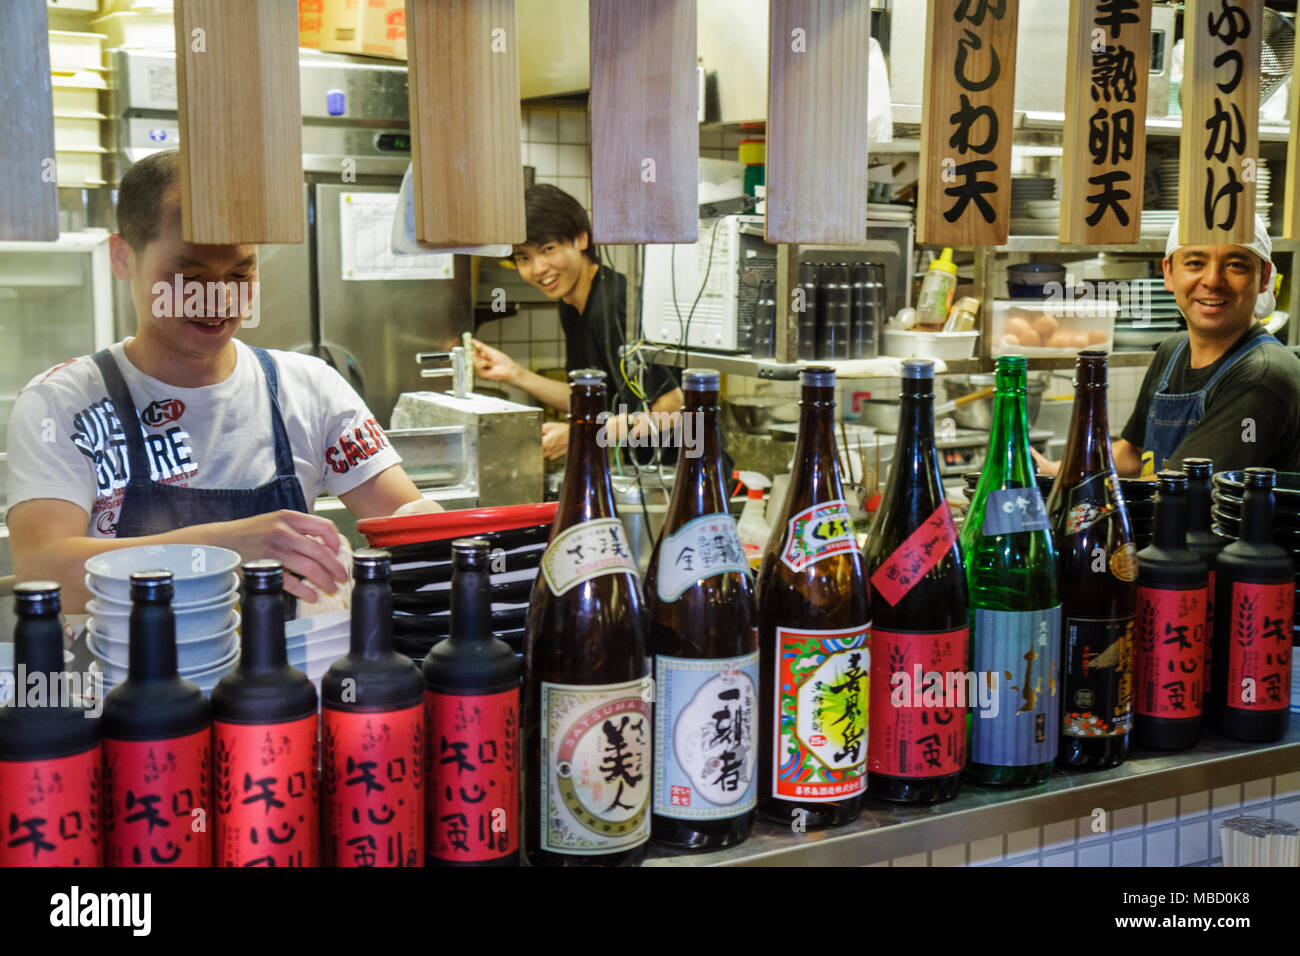 Tokyo Japon,Akihabara,asiatique Oriental,homme hommes adultes adultes,travailleurs,restaurant restaurants restauration café cafés,cuisine,cuisinier,kanji,japonais Engli Banque D'Images